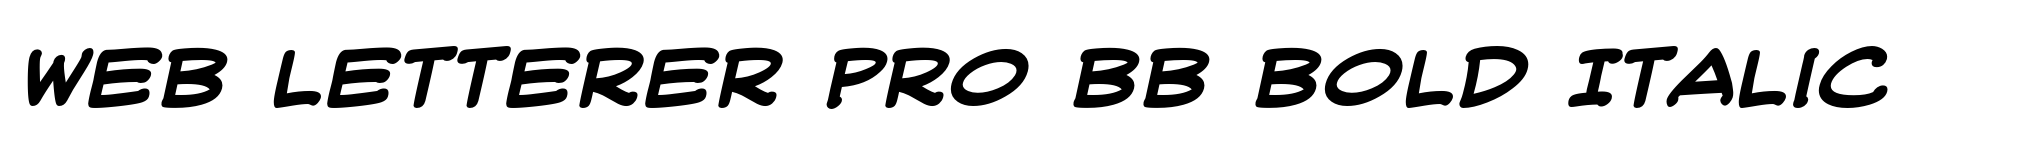 Web Letterer Pro BB Bold Italic image